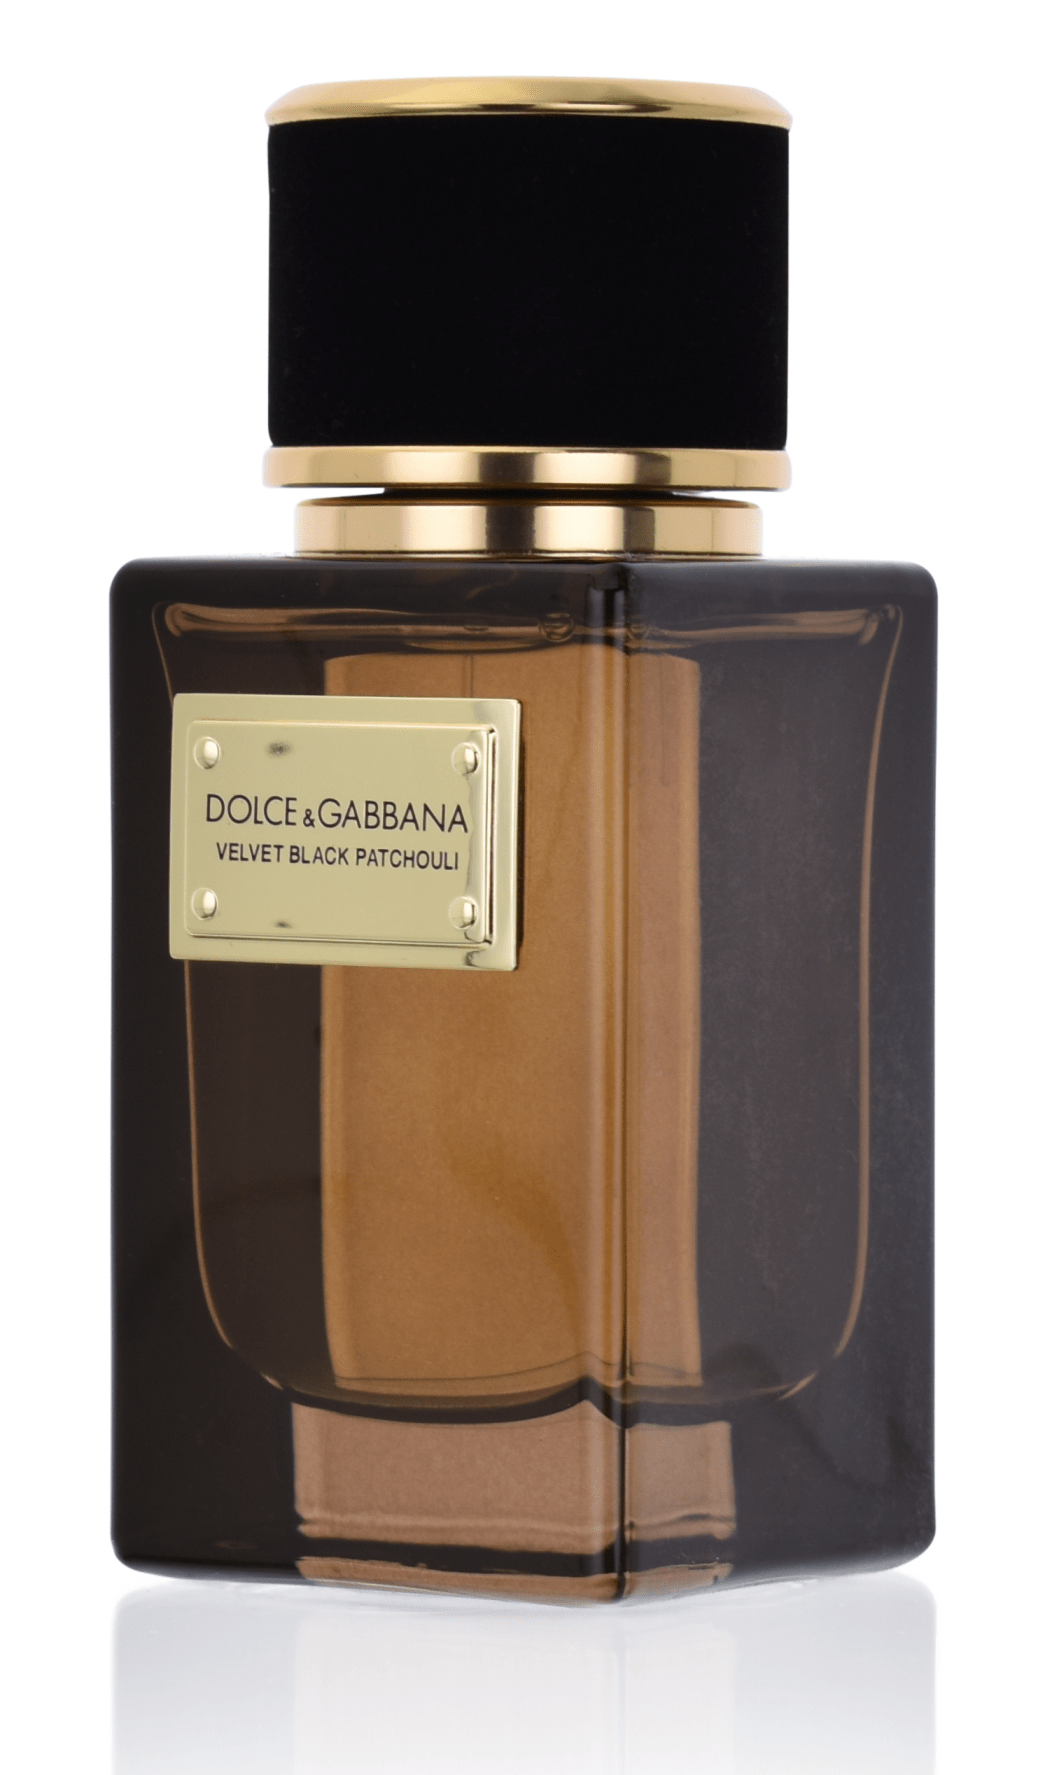 Dolce & Gabbana Velvet Black Patchouli 5 ml Eau de Parfum Abfüllung        